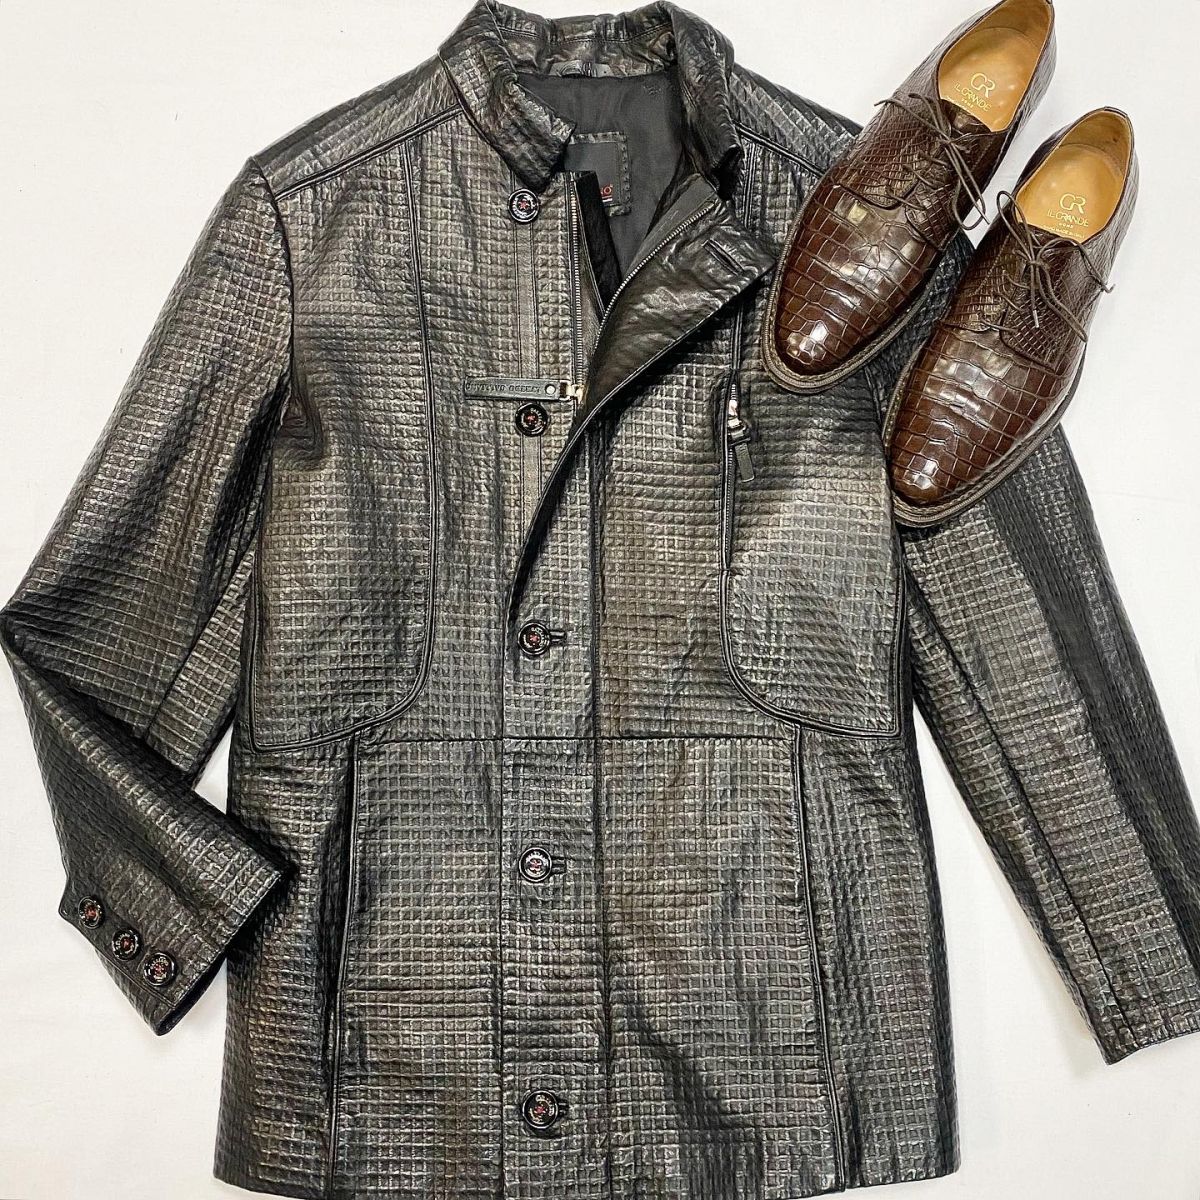 Куртка / кожа / Galliano размер 52 цена 30 770 руб Ботинки / крокодил / CR il Grande размер 43 цена 38 463 руб